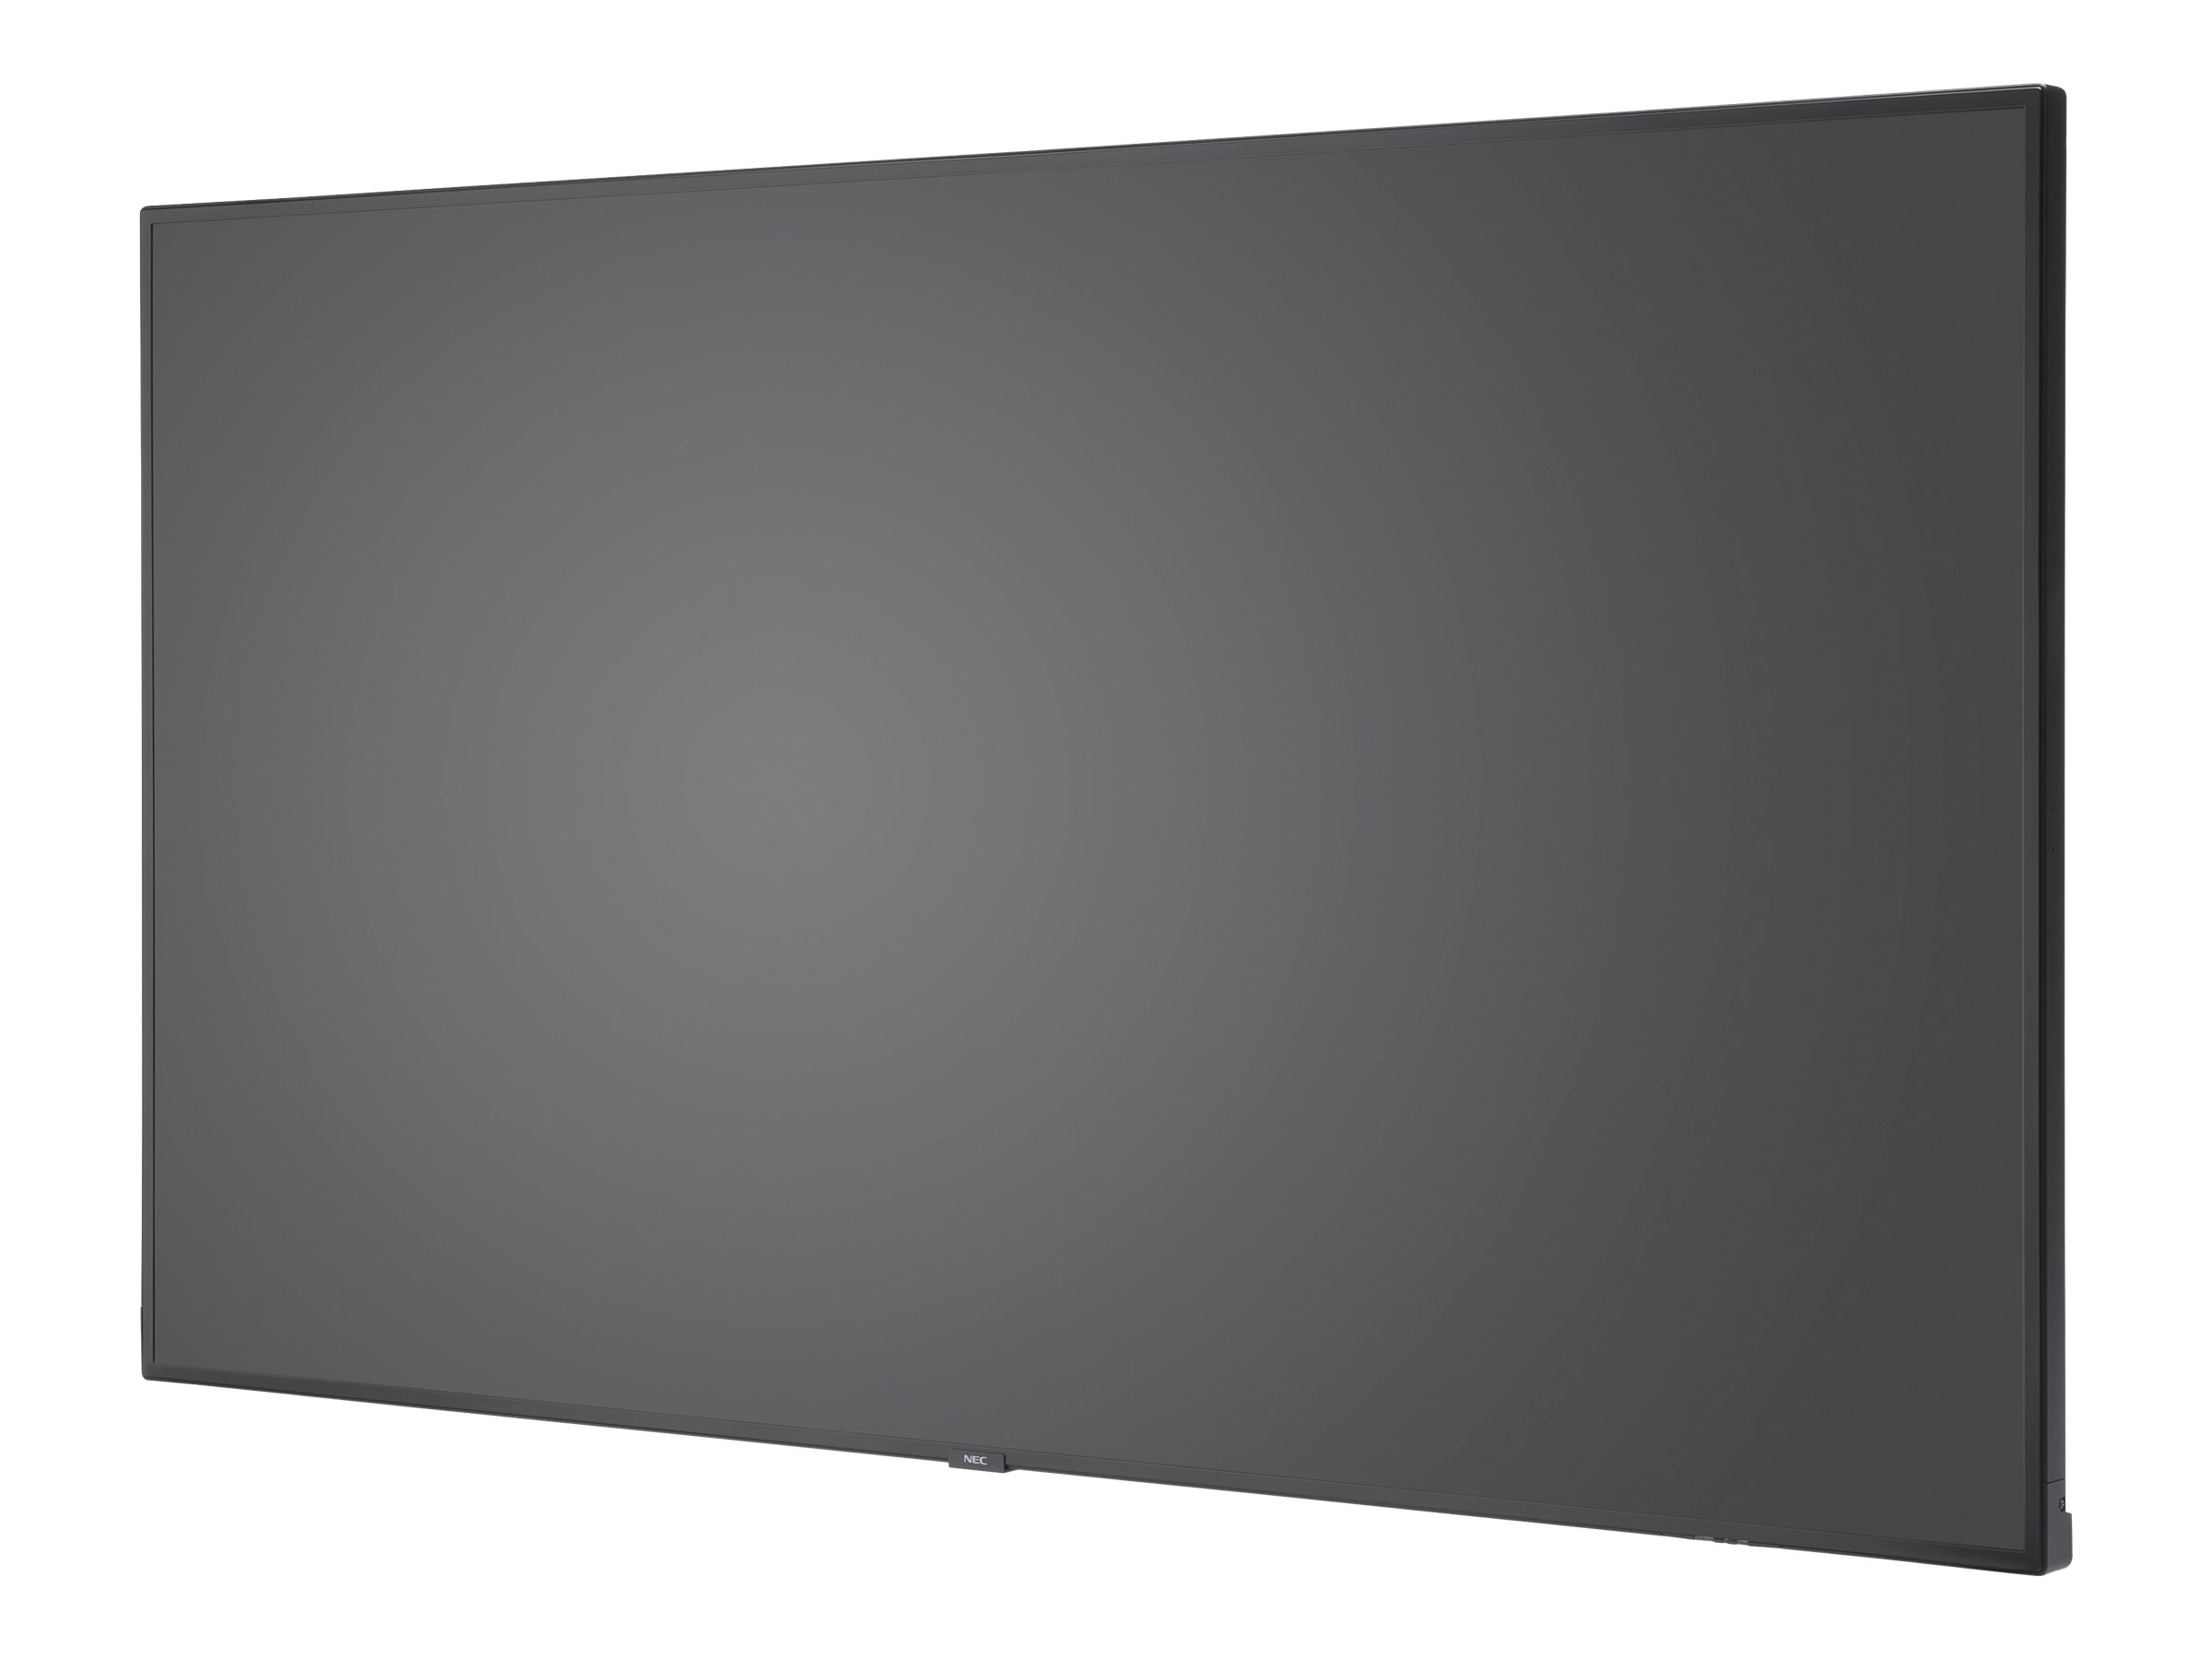 NEC MultiSync V554Q - Classe de diagonale 55" écran LCD rétro-éclairé par LED - signalisation numérique - 4K UHD (2160p) 3840 x 2160 - HDR - éclairage périphérique - 60004528 - Écrans LCD/LED grand format